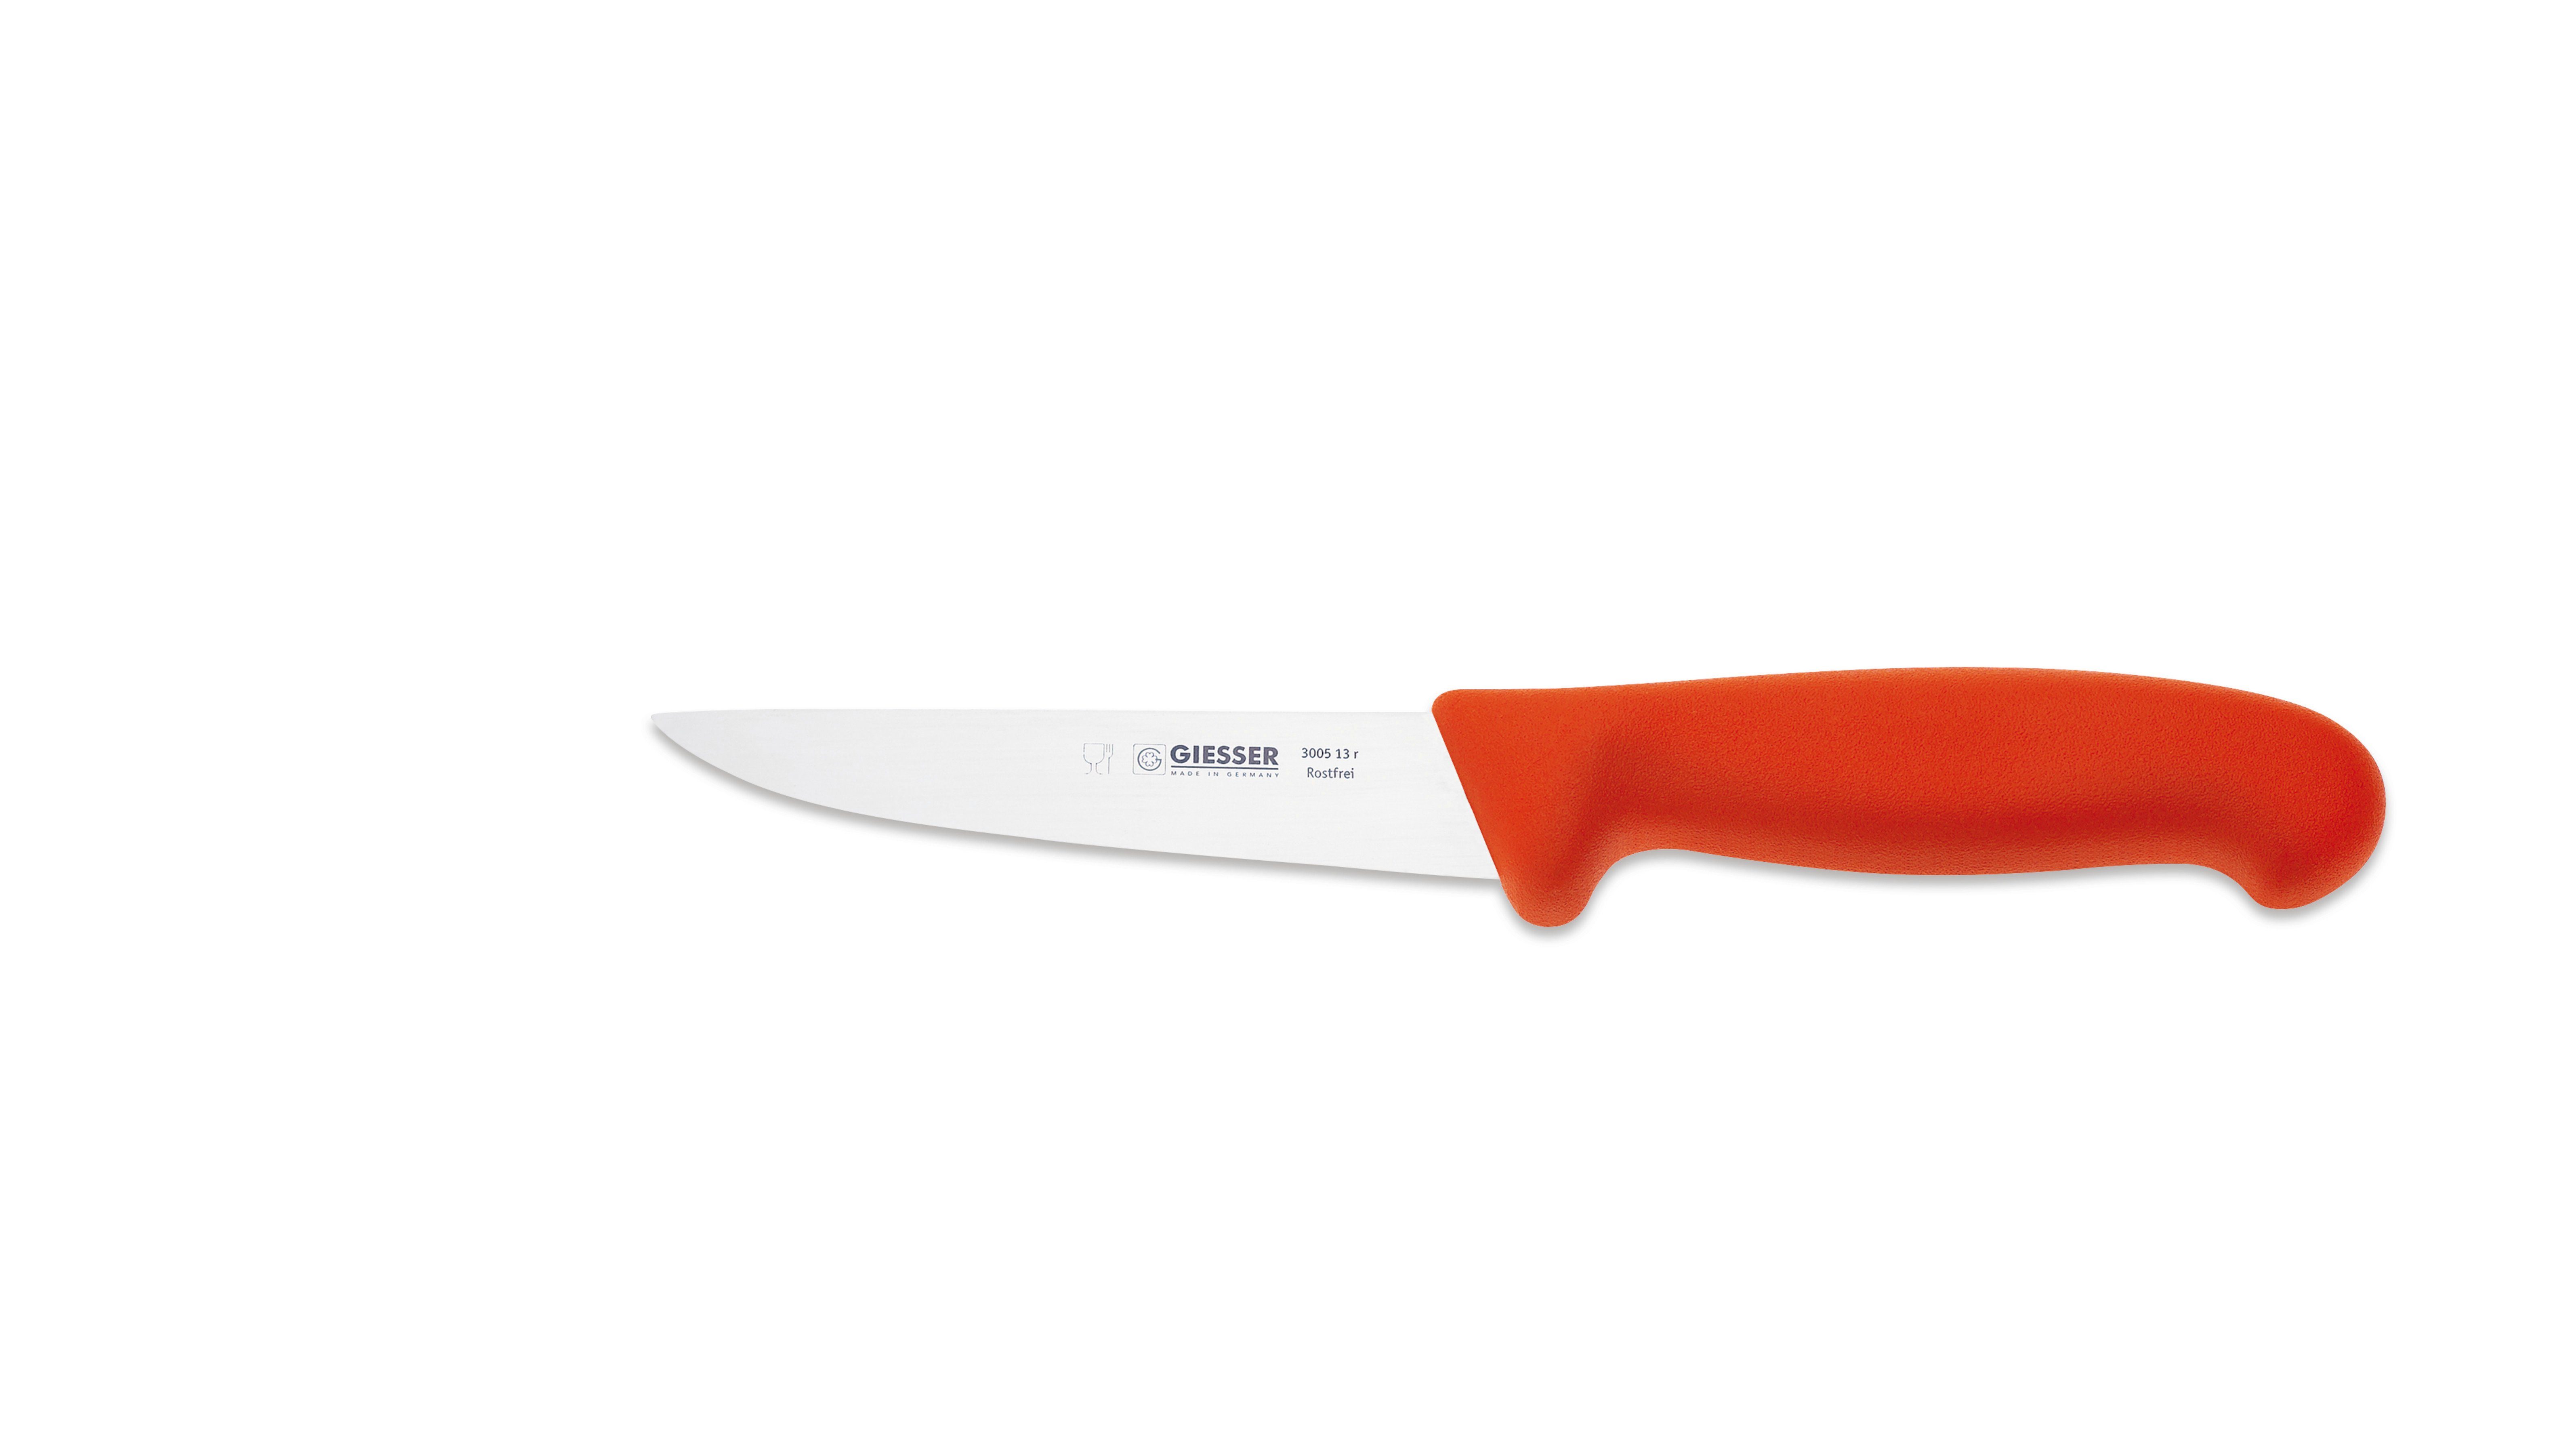 Giesser Messer Ausbeinmesser Stechmesser 3005 13-30, starke, gerade Klinge, Ideal für Fleischer Rot